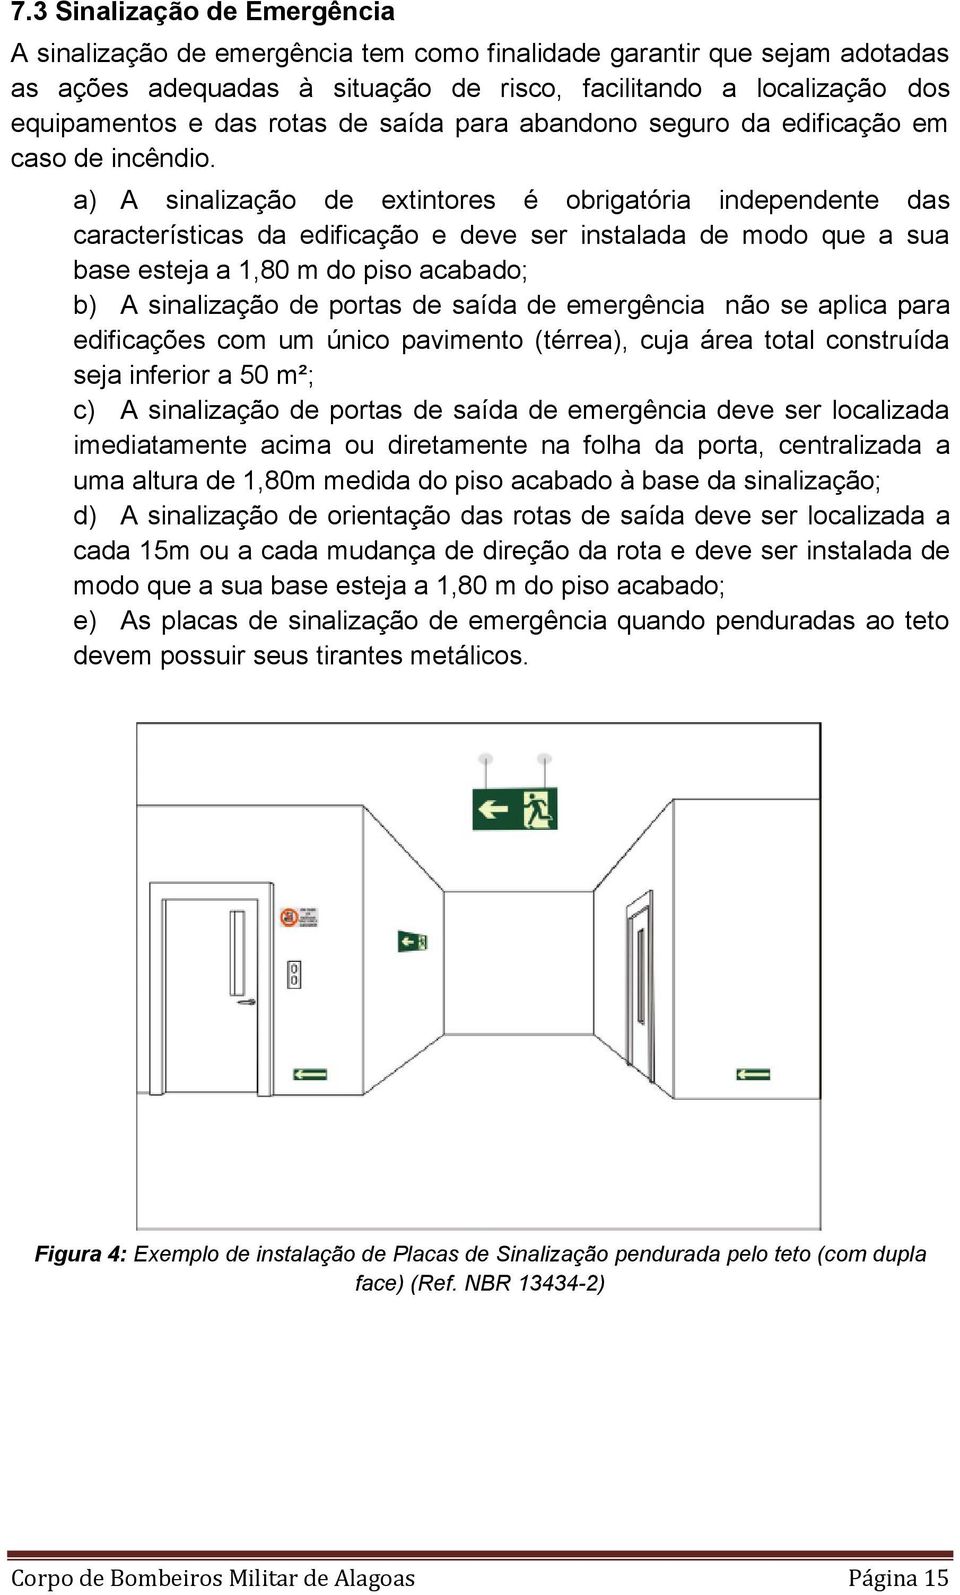 a) A sinalização de extintores é obrigatória independente das características da edificação e deve ser instalada de modo que a sua base esteja a 1,80 m do piso acabado; b) A sinalização de portas de